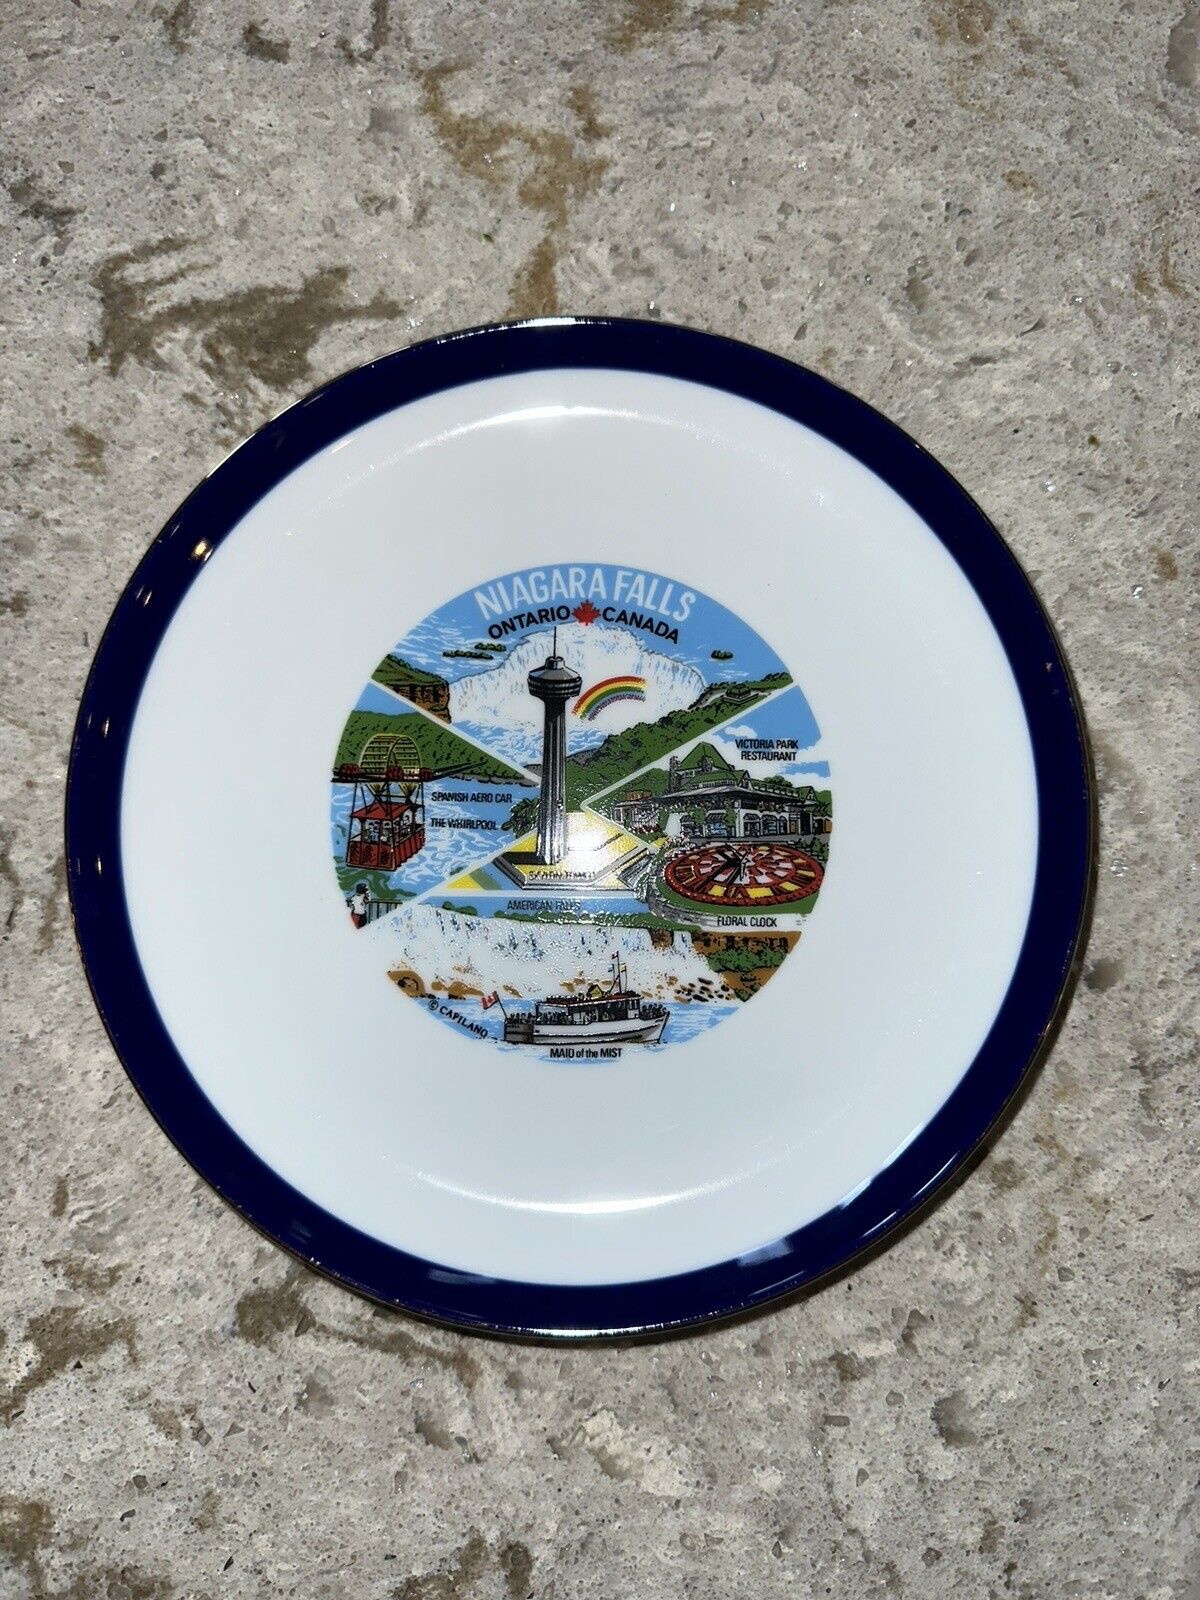 Vintage Niagara Falls Ontario Canada Decorative Plate 7.5”x7.5” Great Condition